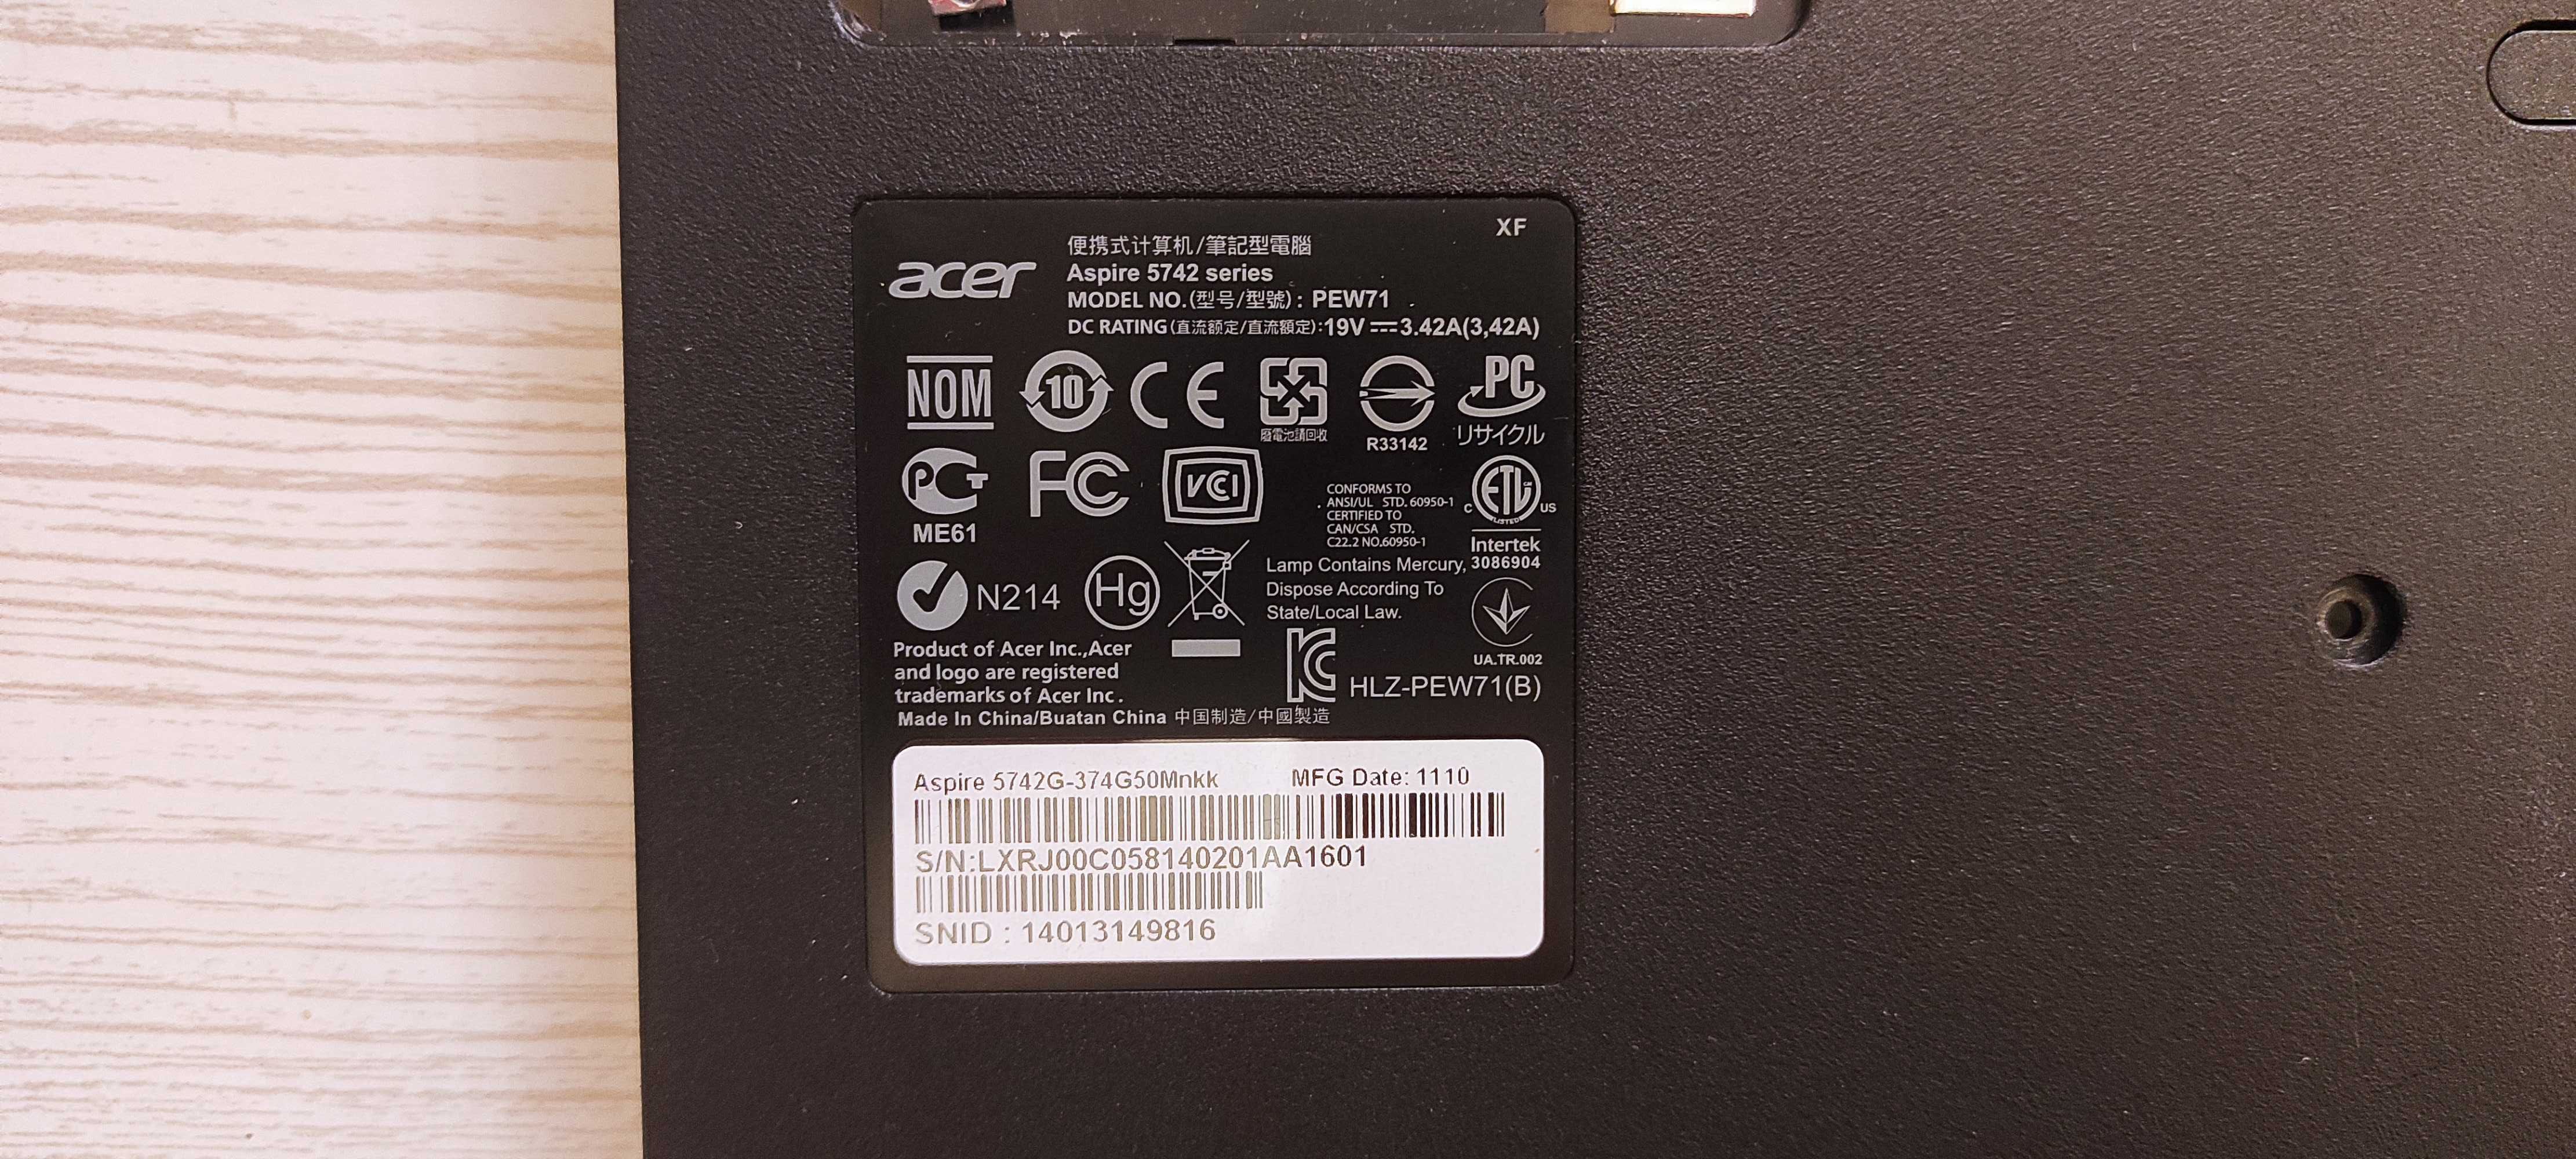 Продам ноутбук Acer aspire 5742 по запчастям